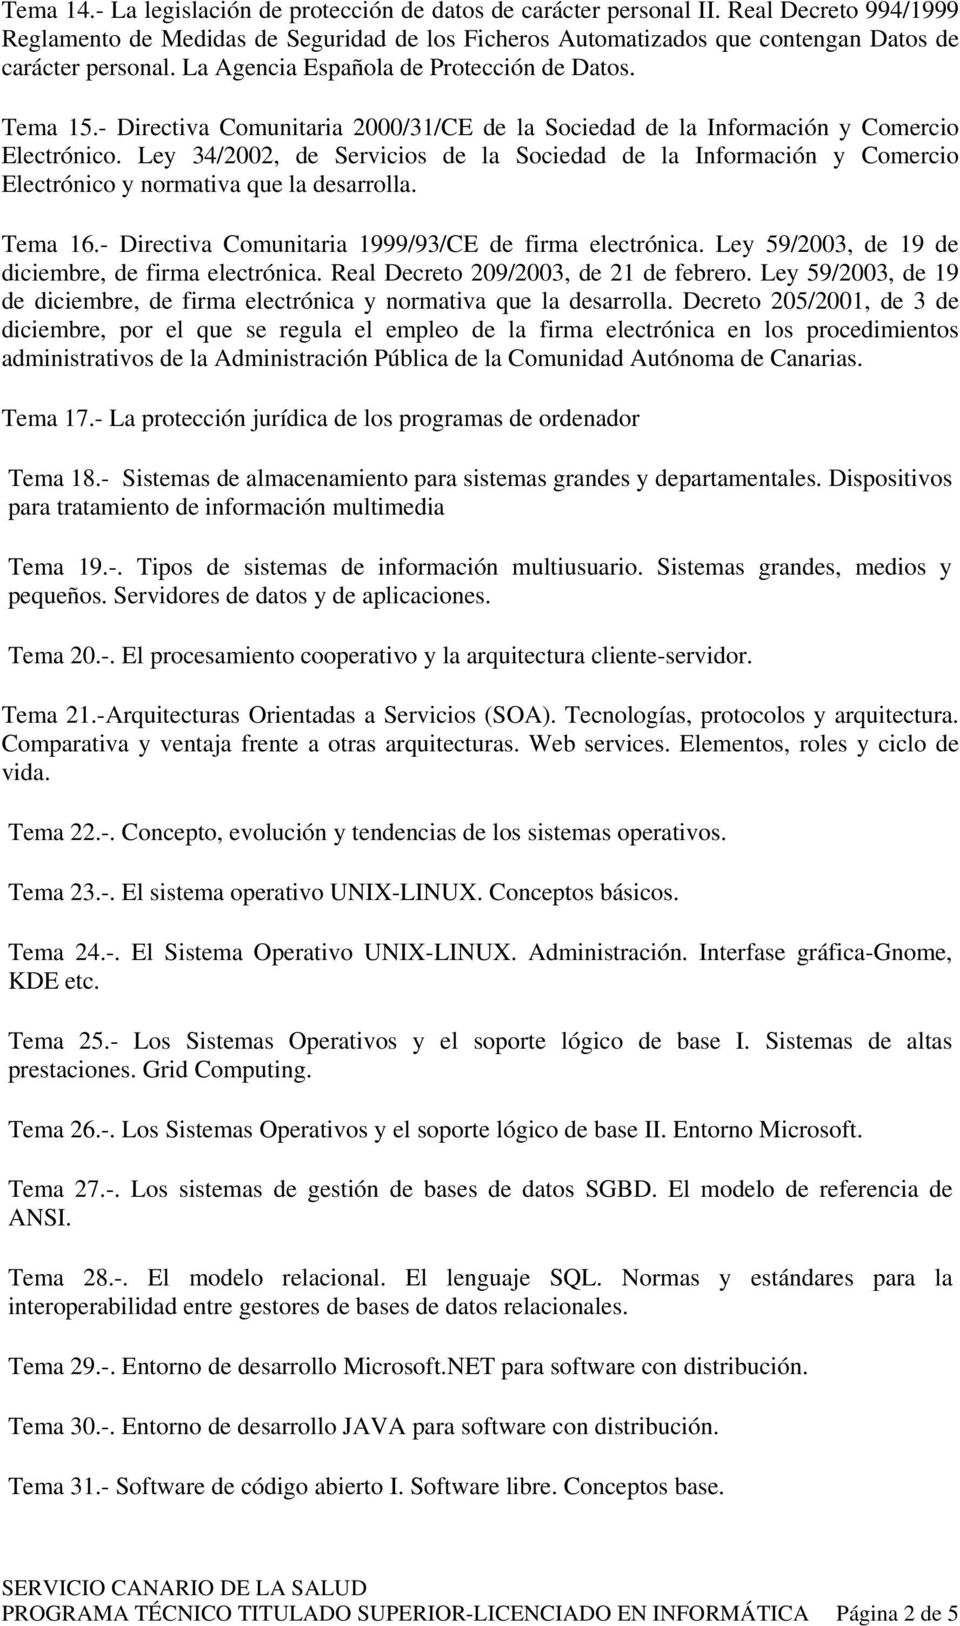 - Directiva Comunitaria 2000/31/CE de la Sociedad de la Información y Comercio Electrónico.